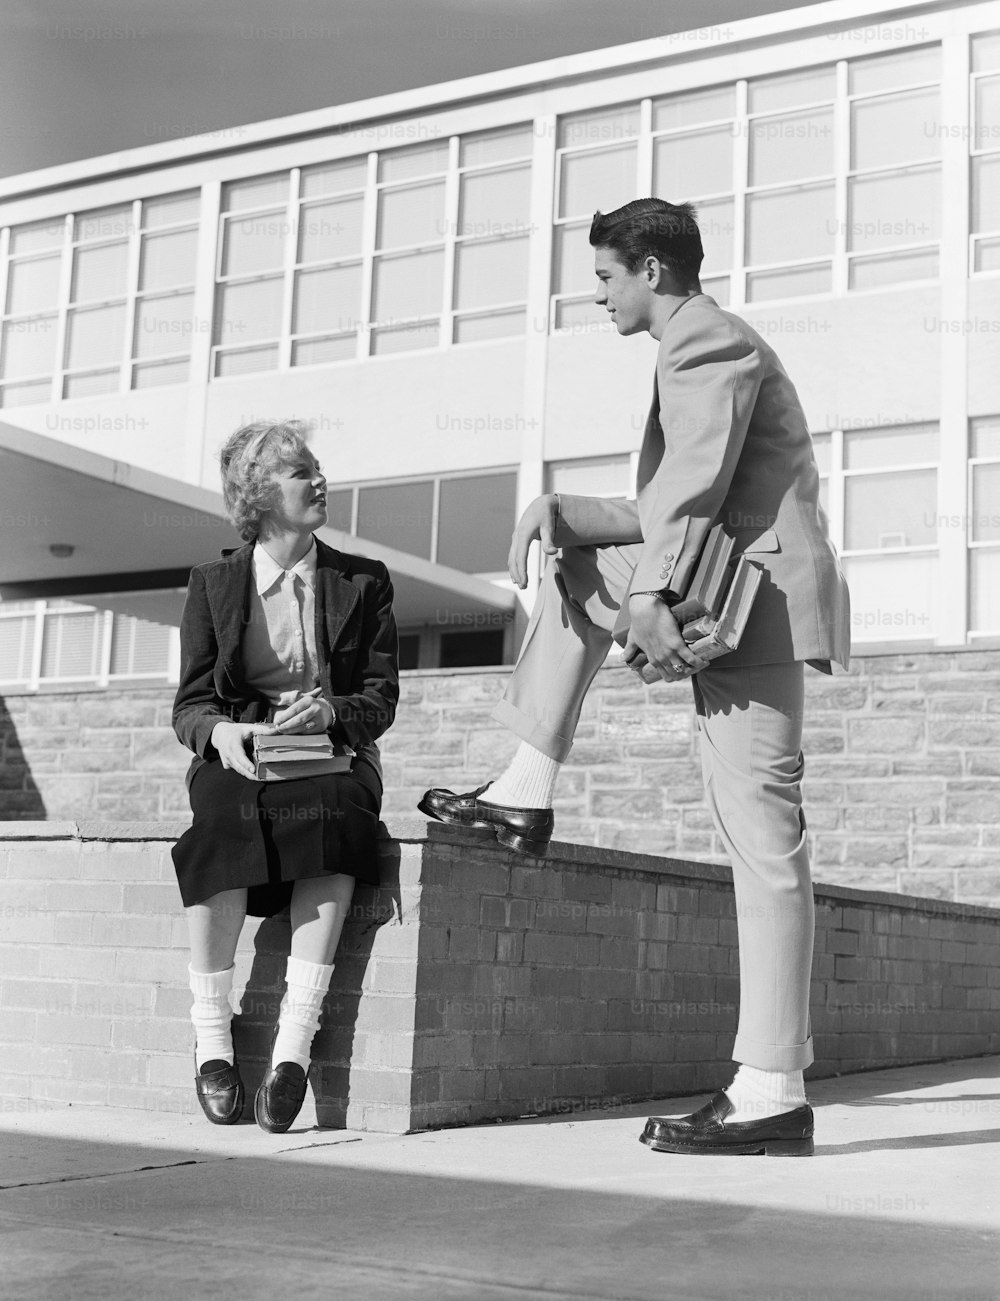 ESTADOS UNIDOS - CIRCA 1950s: Chica de secundaria sentada en la pared, hablando con un adolescente.